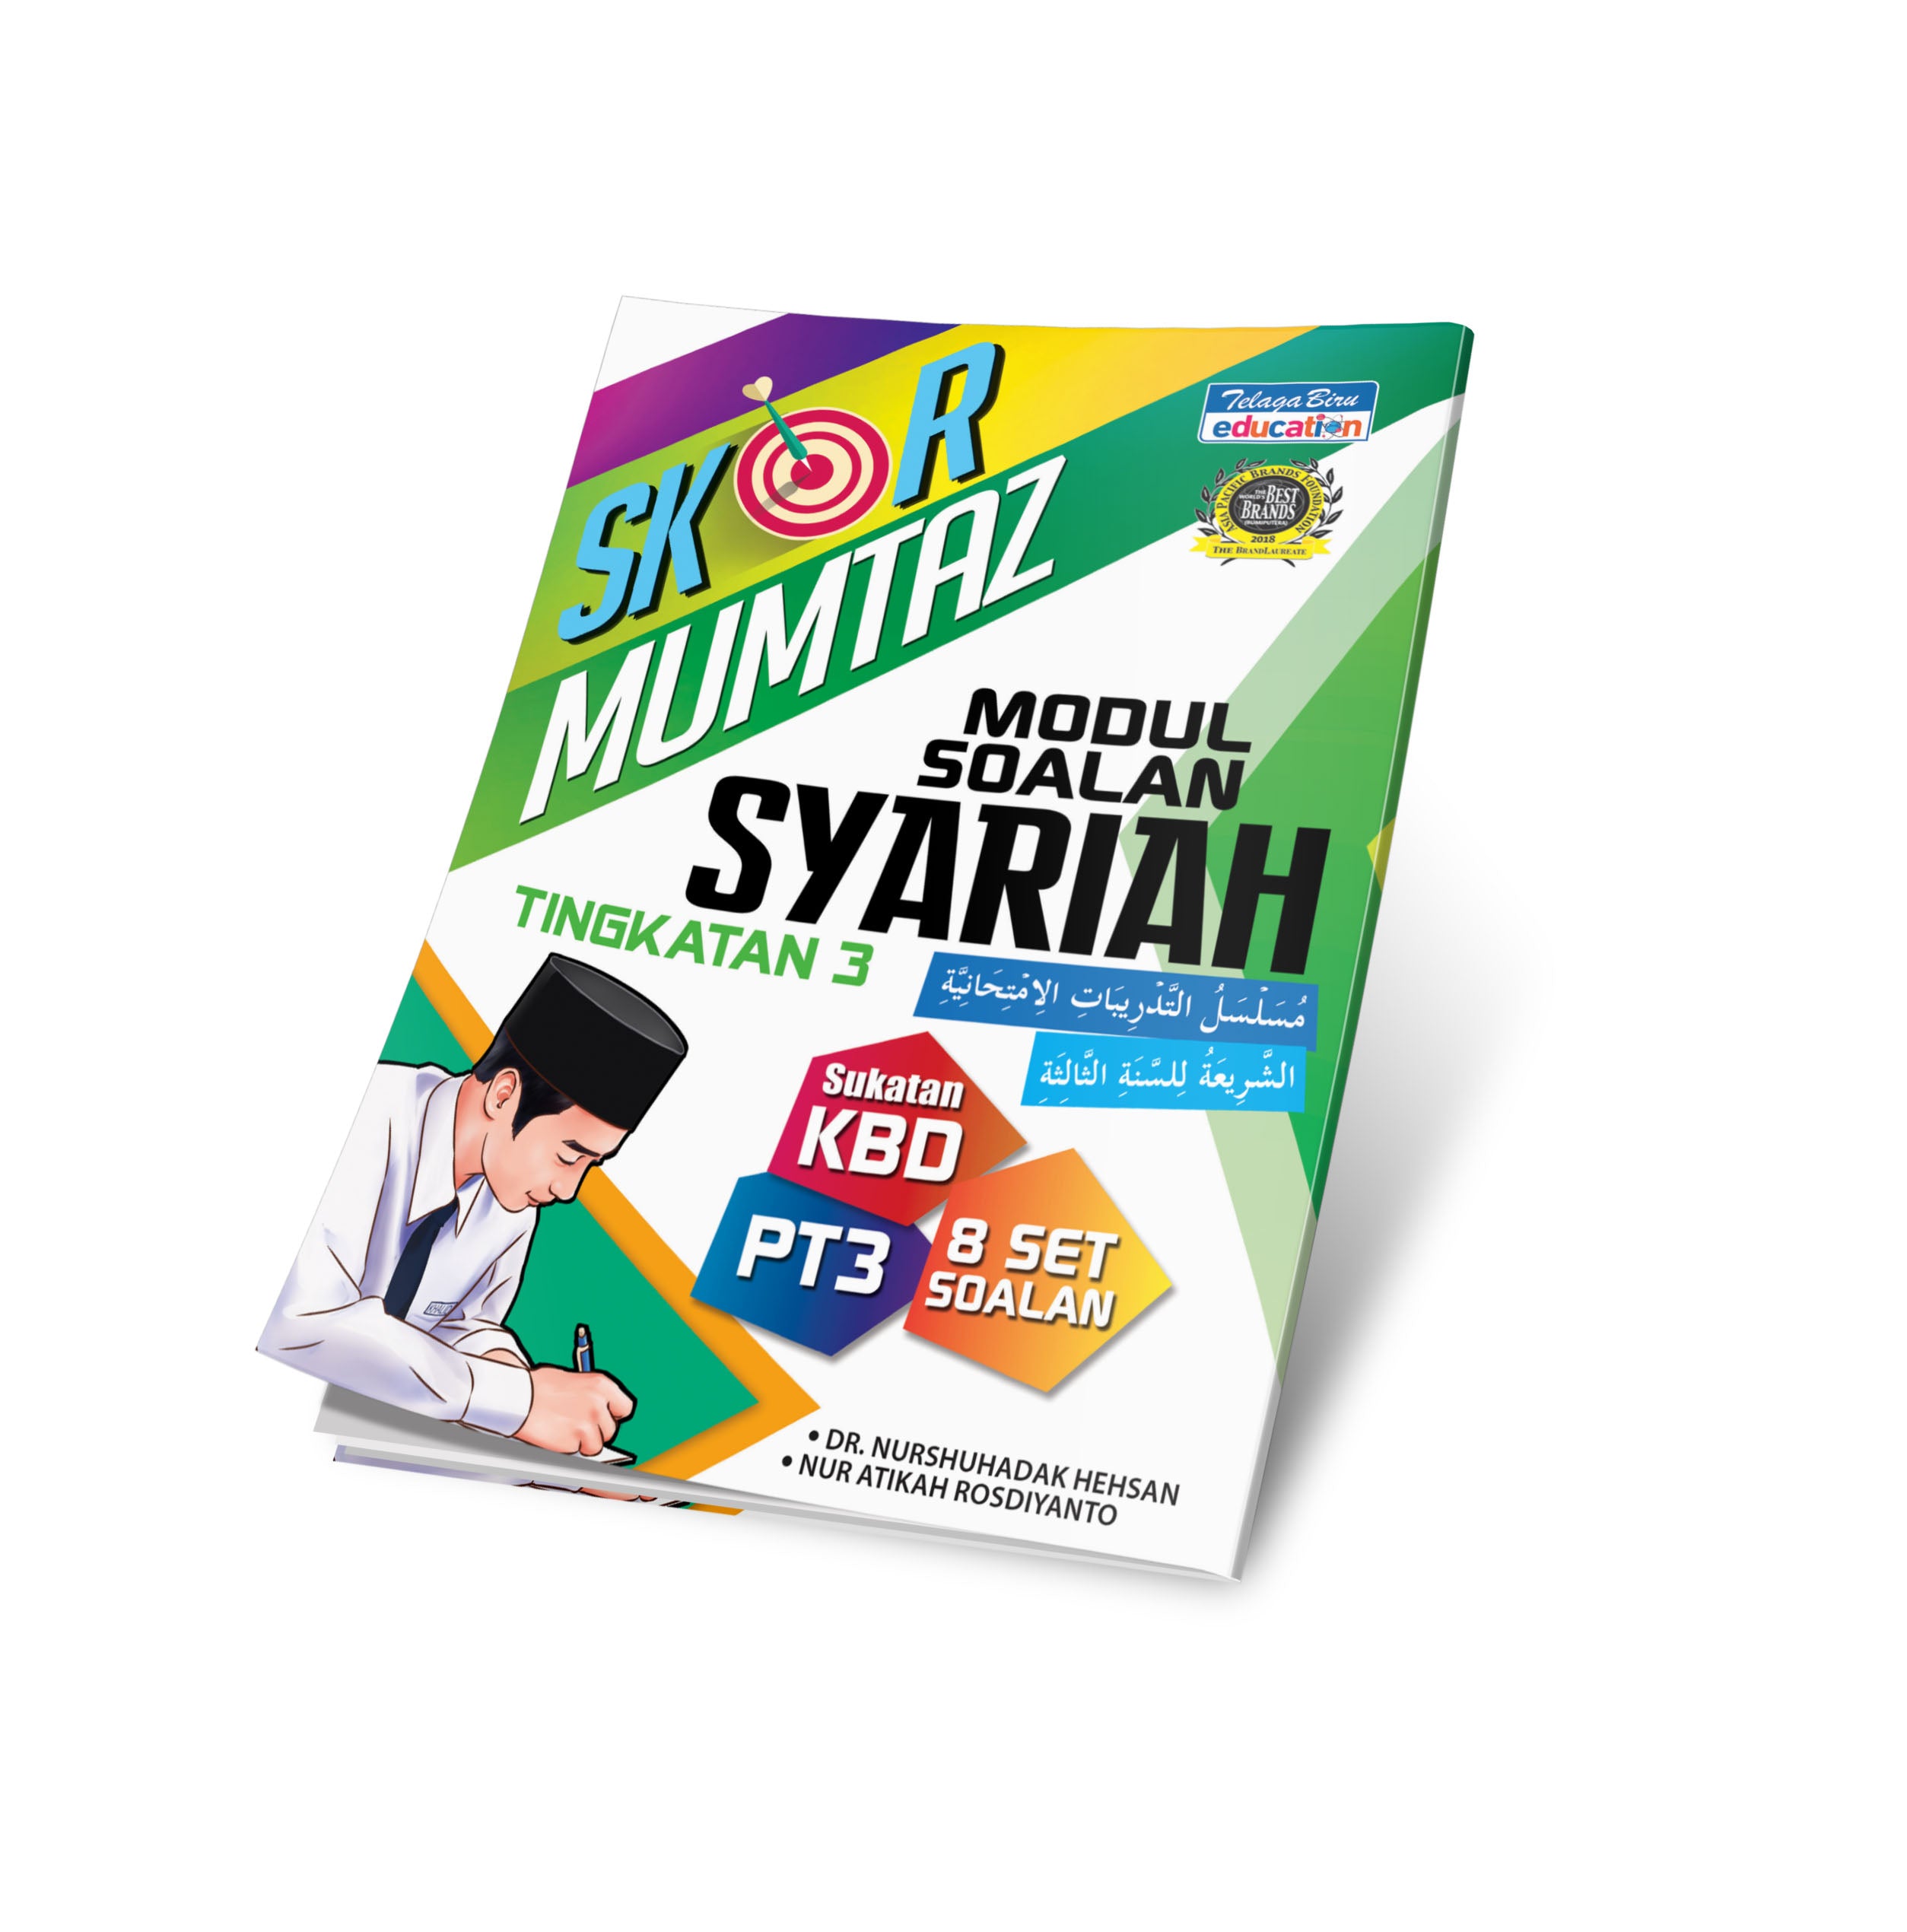 Skor Mumtaz Modul Soalan Syariah Tingkatan 3 - (TBBS1139)